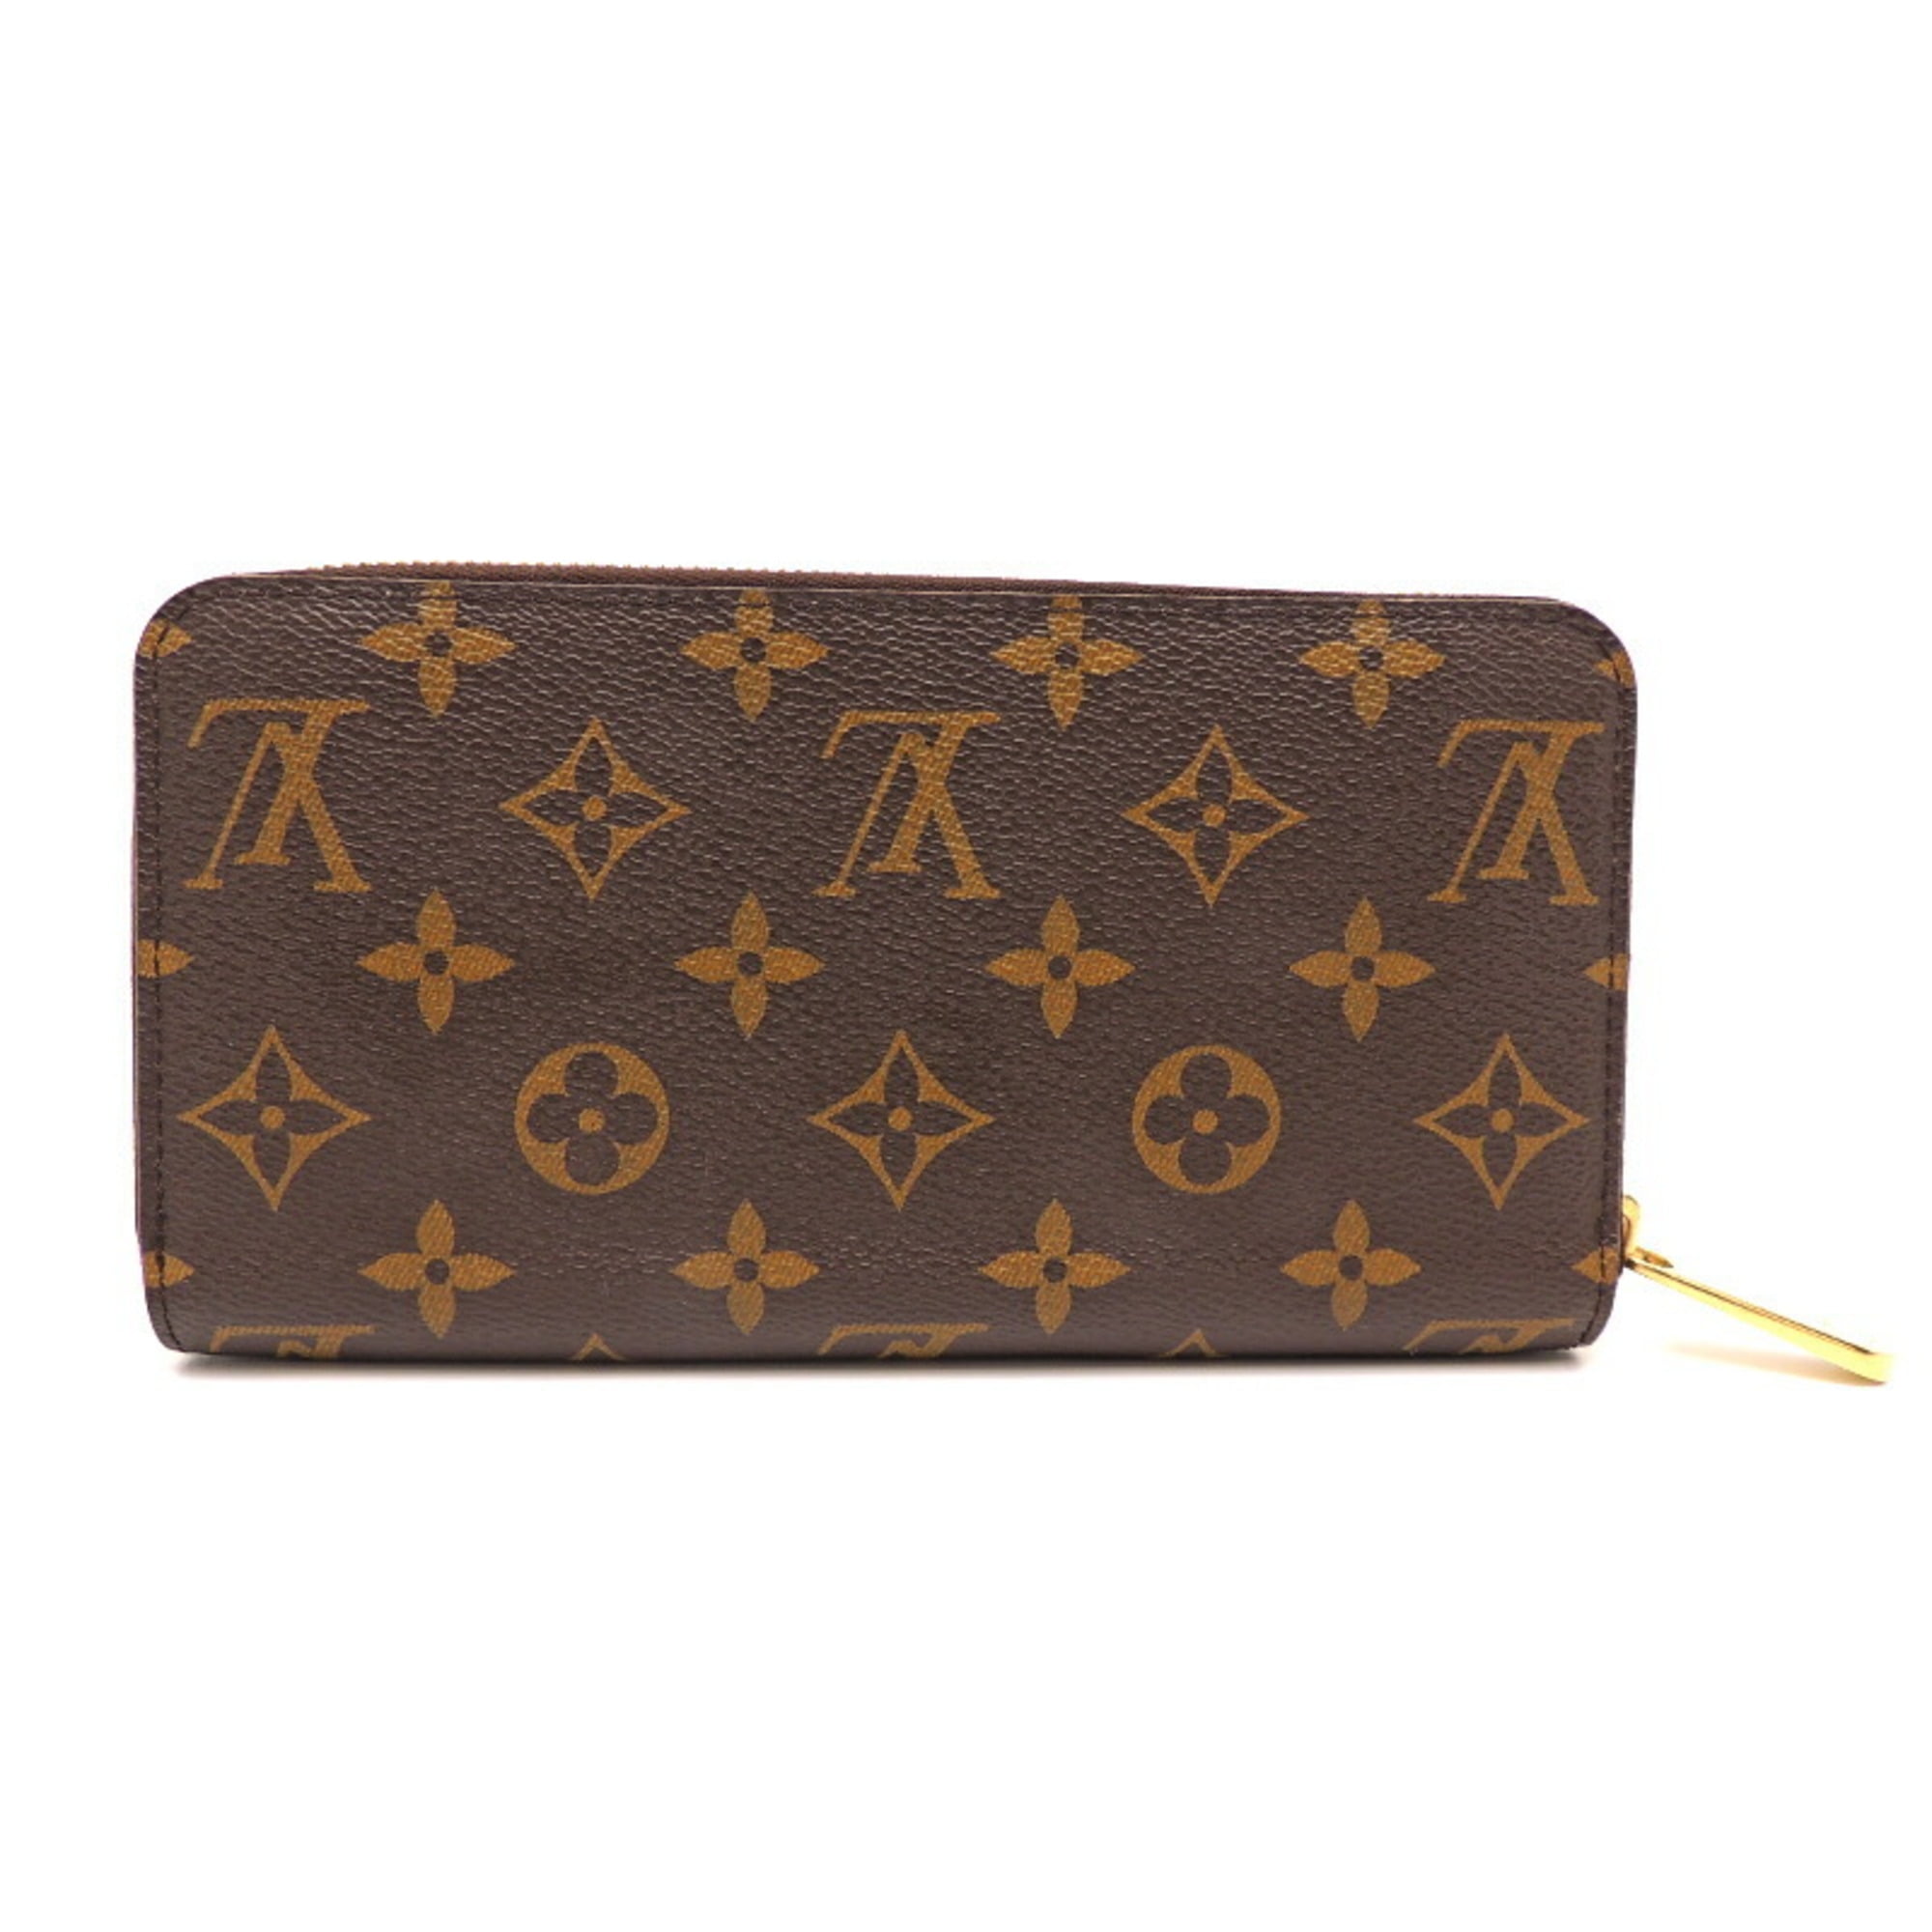 Louis Vuitton - Authenticated Explorer Plissé Handbag - Leather Brown for Women, Very Good Condition